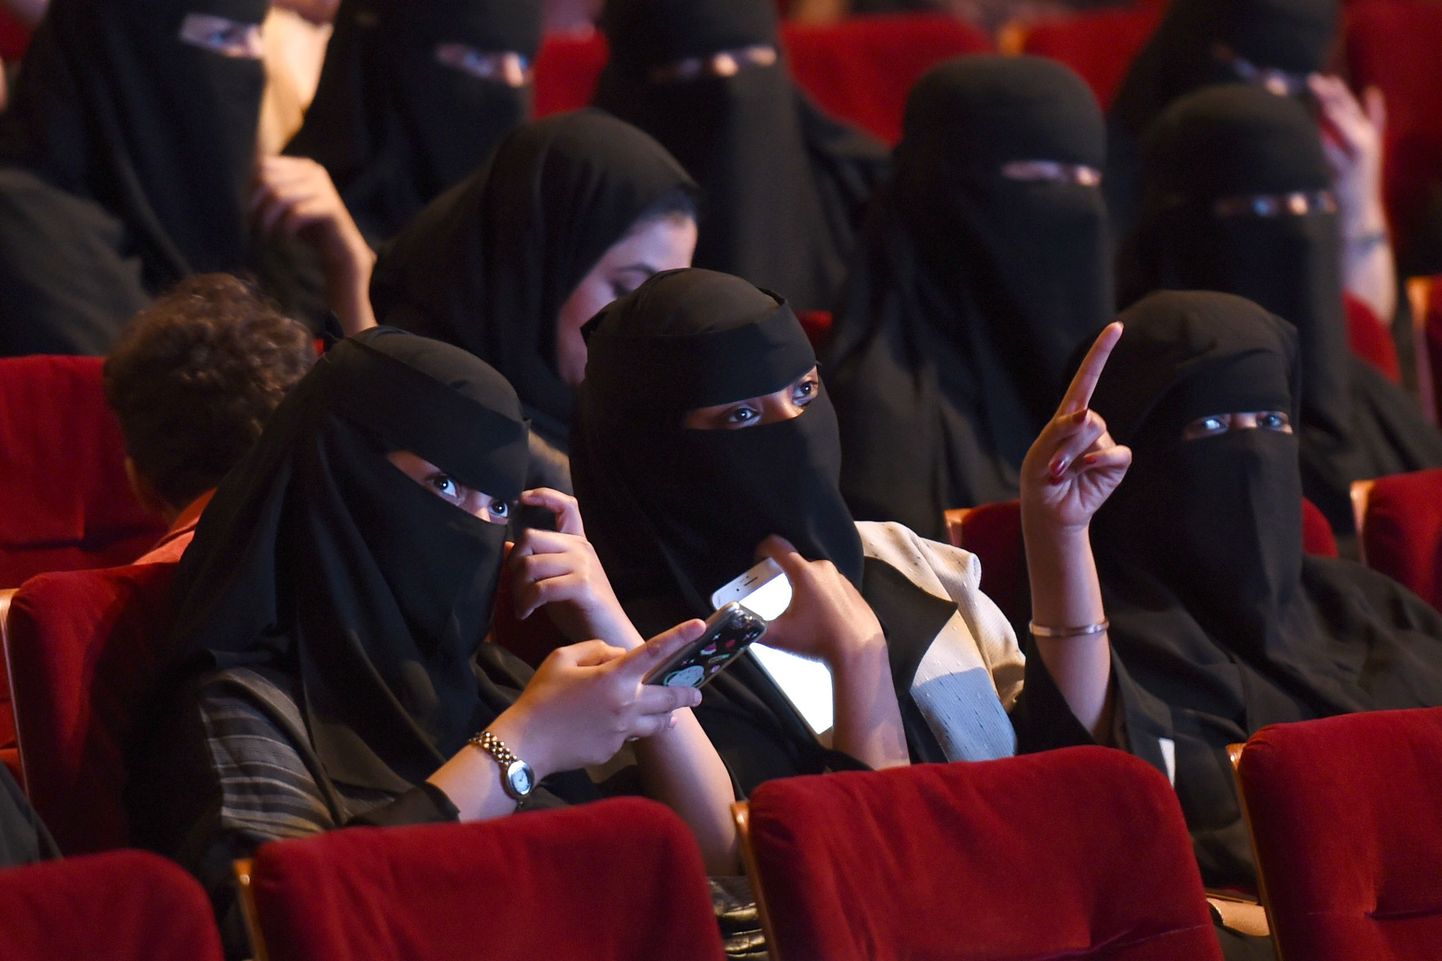 Saudi naised kinoseansil lühifilmide festivali ajal Ar-Riyāḑis 2017. aasta oktoobris. Tegu oli haruldase juhusega, mis kuulutas ette peatset kinokeelu tühistamist.